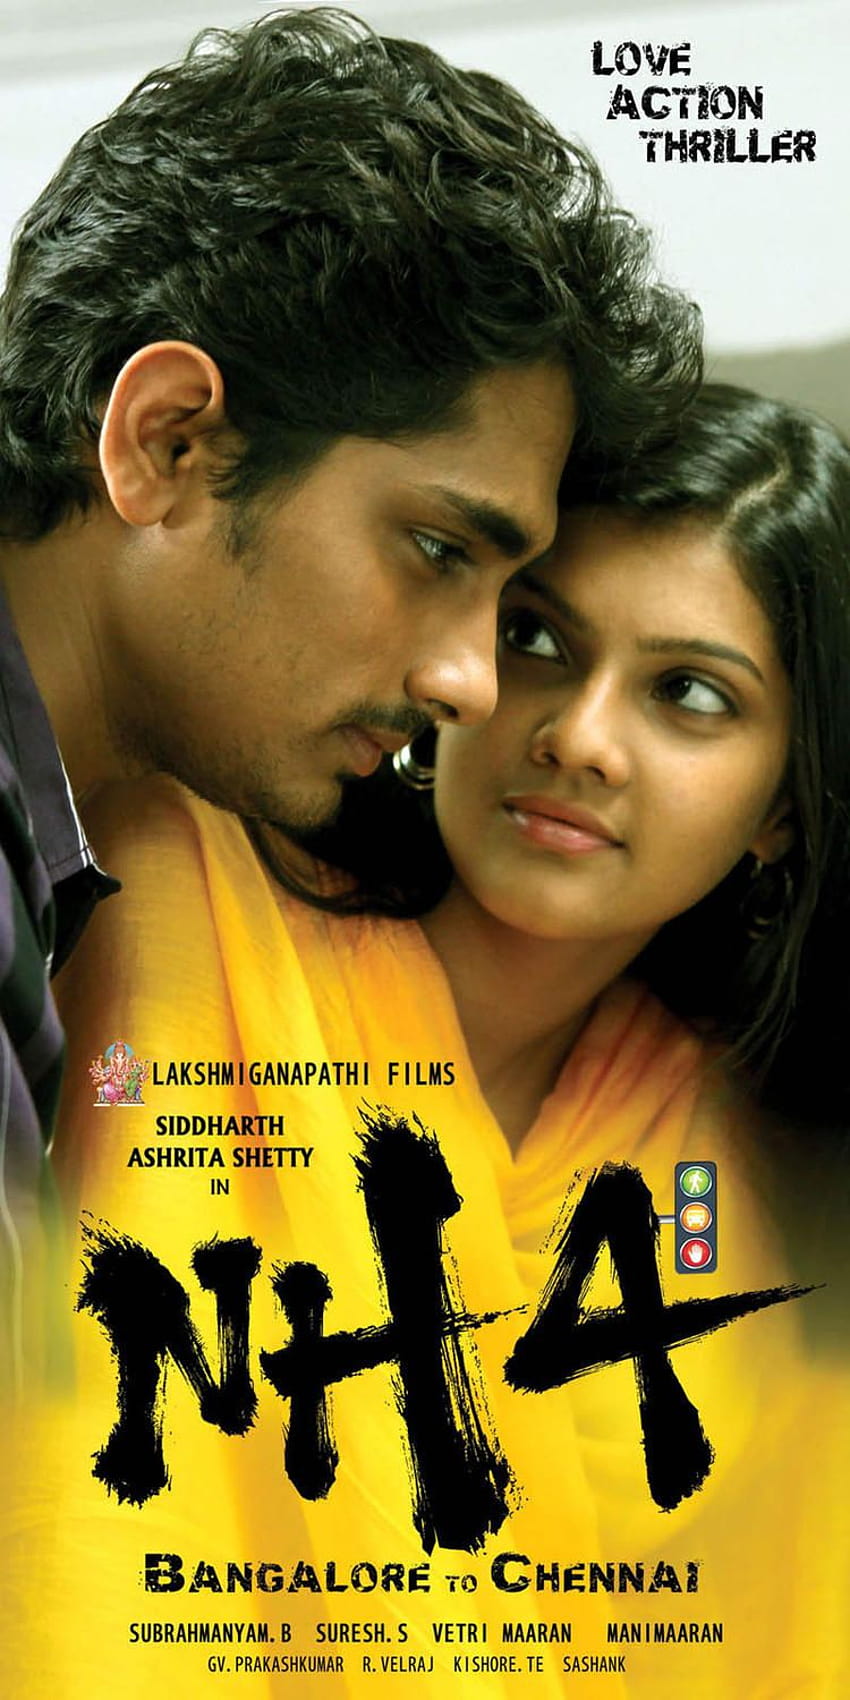 Siddharth y Ashritha se ven deslumbrantes en la película NH4, los últimos carteles de la película Udhayam NH4 fondo de pantalla del teléfono